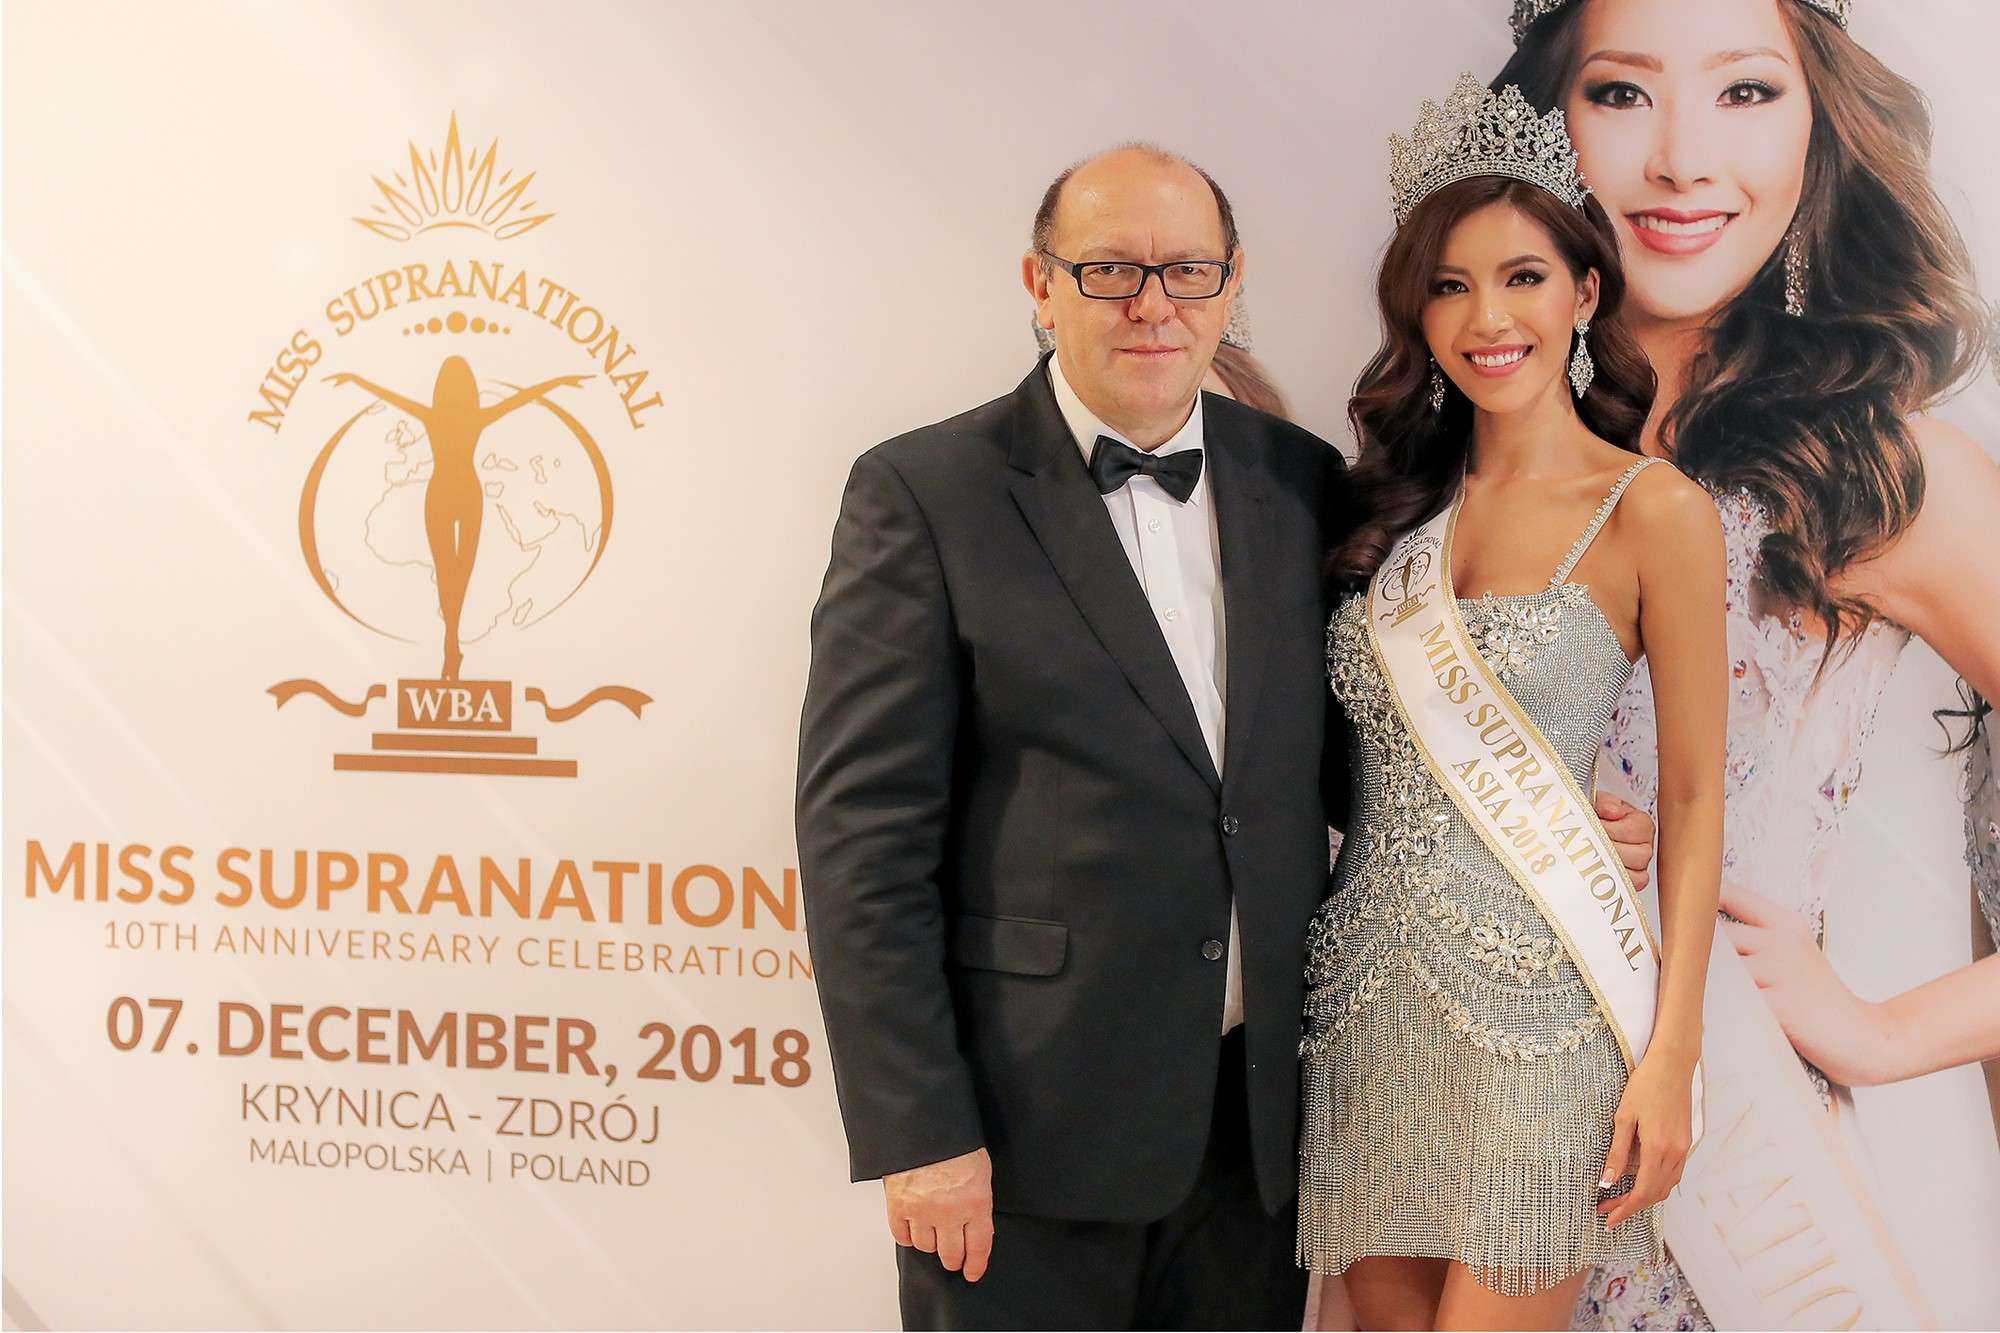 Minh Tú đoạt giải Hoa hậu siêu quốc gia châu Á 2018 - Ảnh 2.